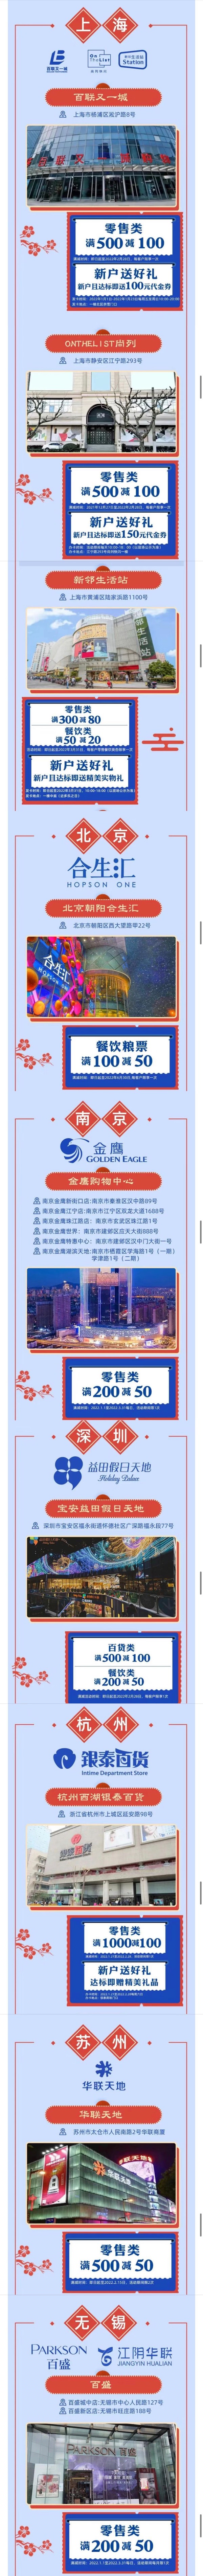 上海银行  9大城市13家商圈虎年开购